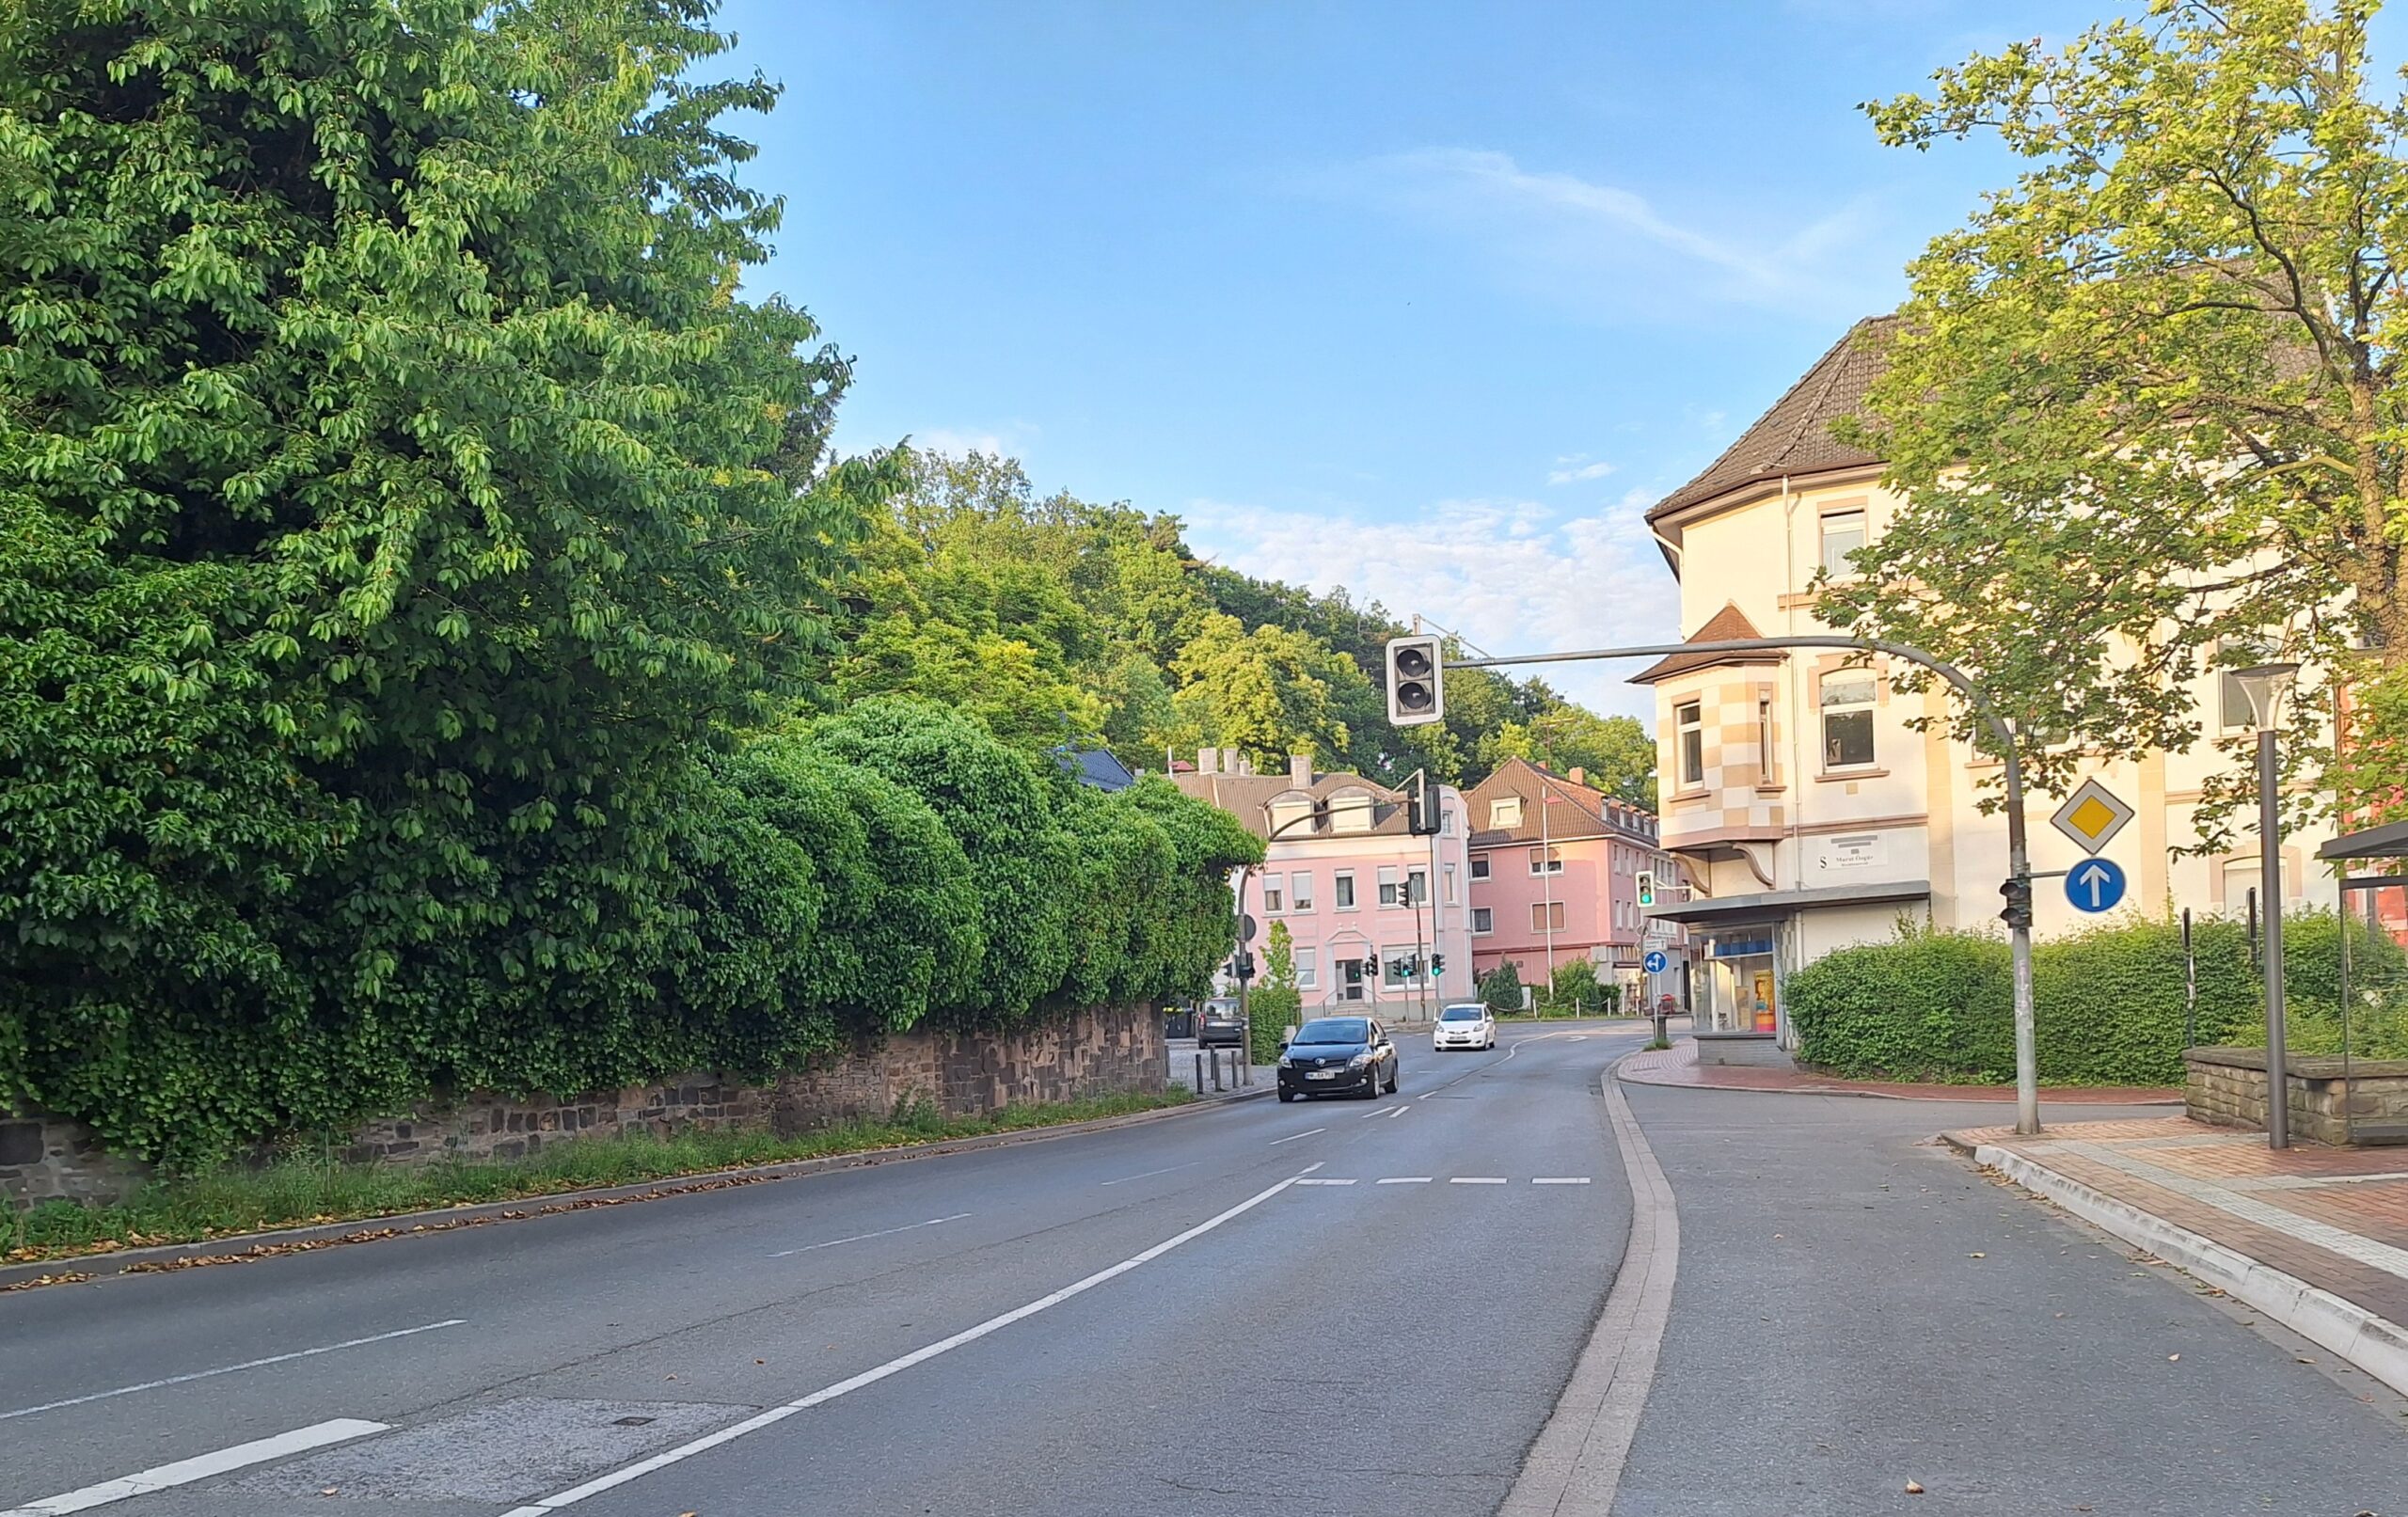 9-Jährige in Fröndenberg angefahren und schwer verletzt – Mercedesfahrer gesucht, der das Kind „rüberwinkte“